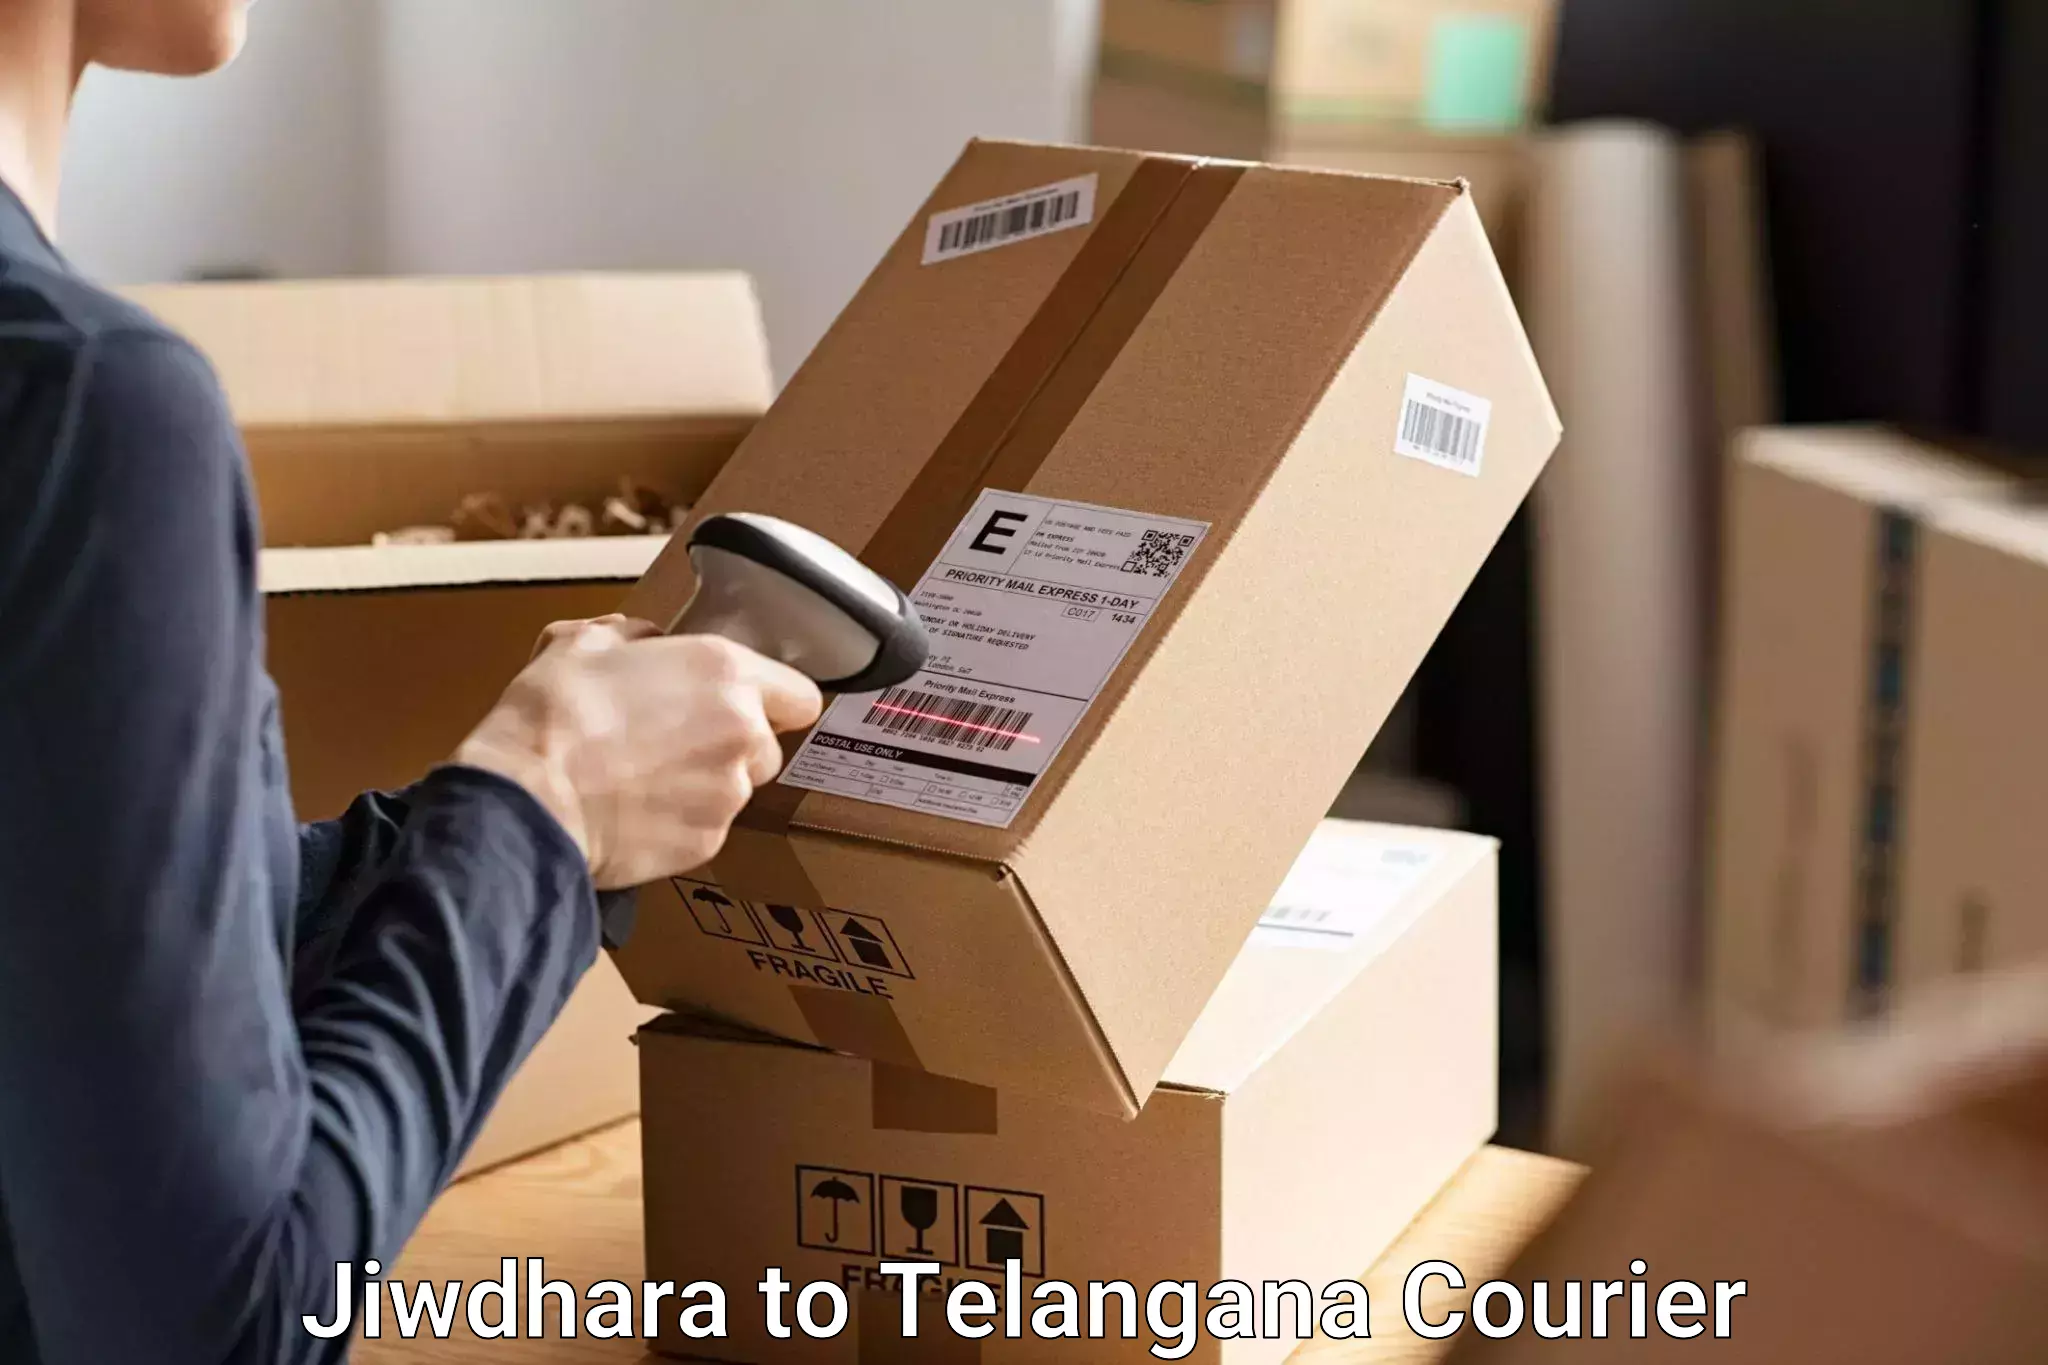 Baggage transport services Jiwdhara to Medak